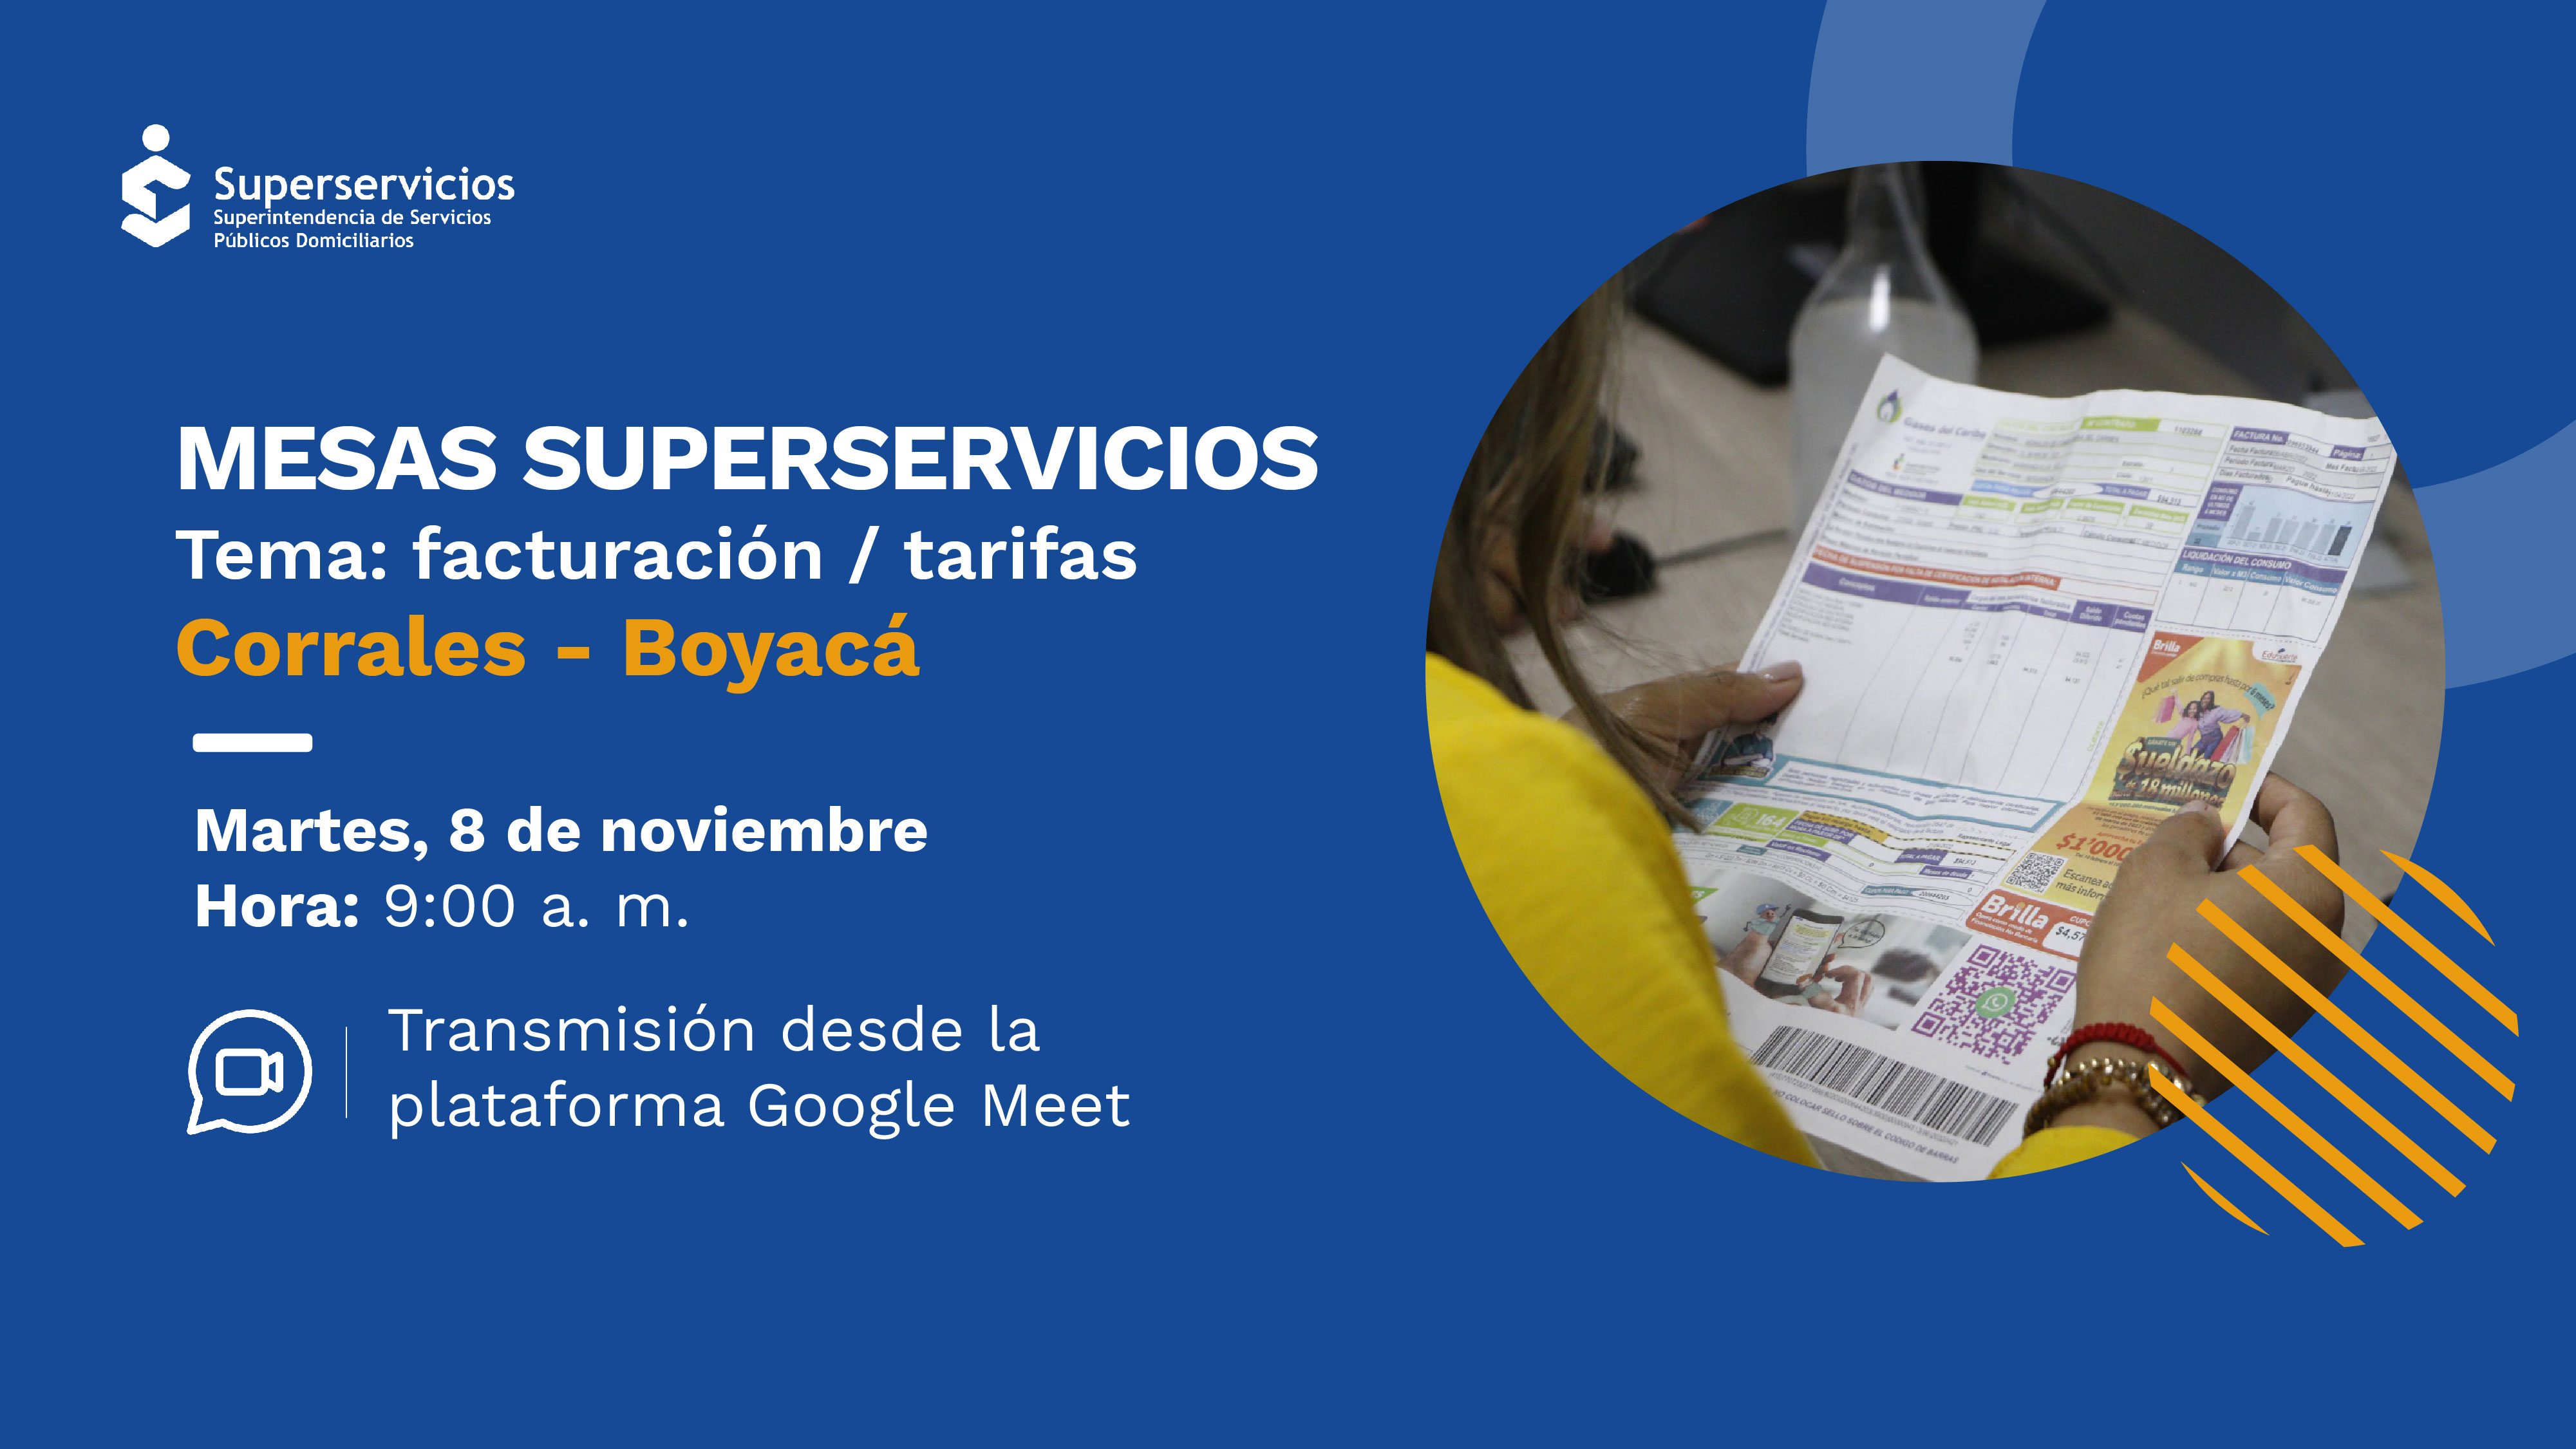 En Corrales, Boyacá hablaremos sobre facturación y tarifas
